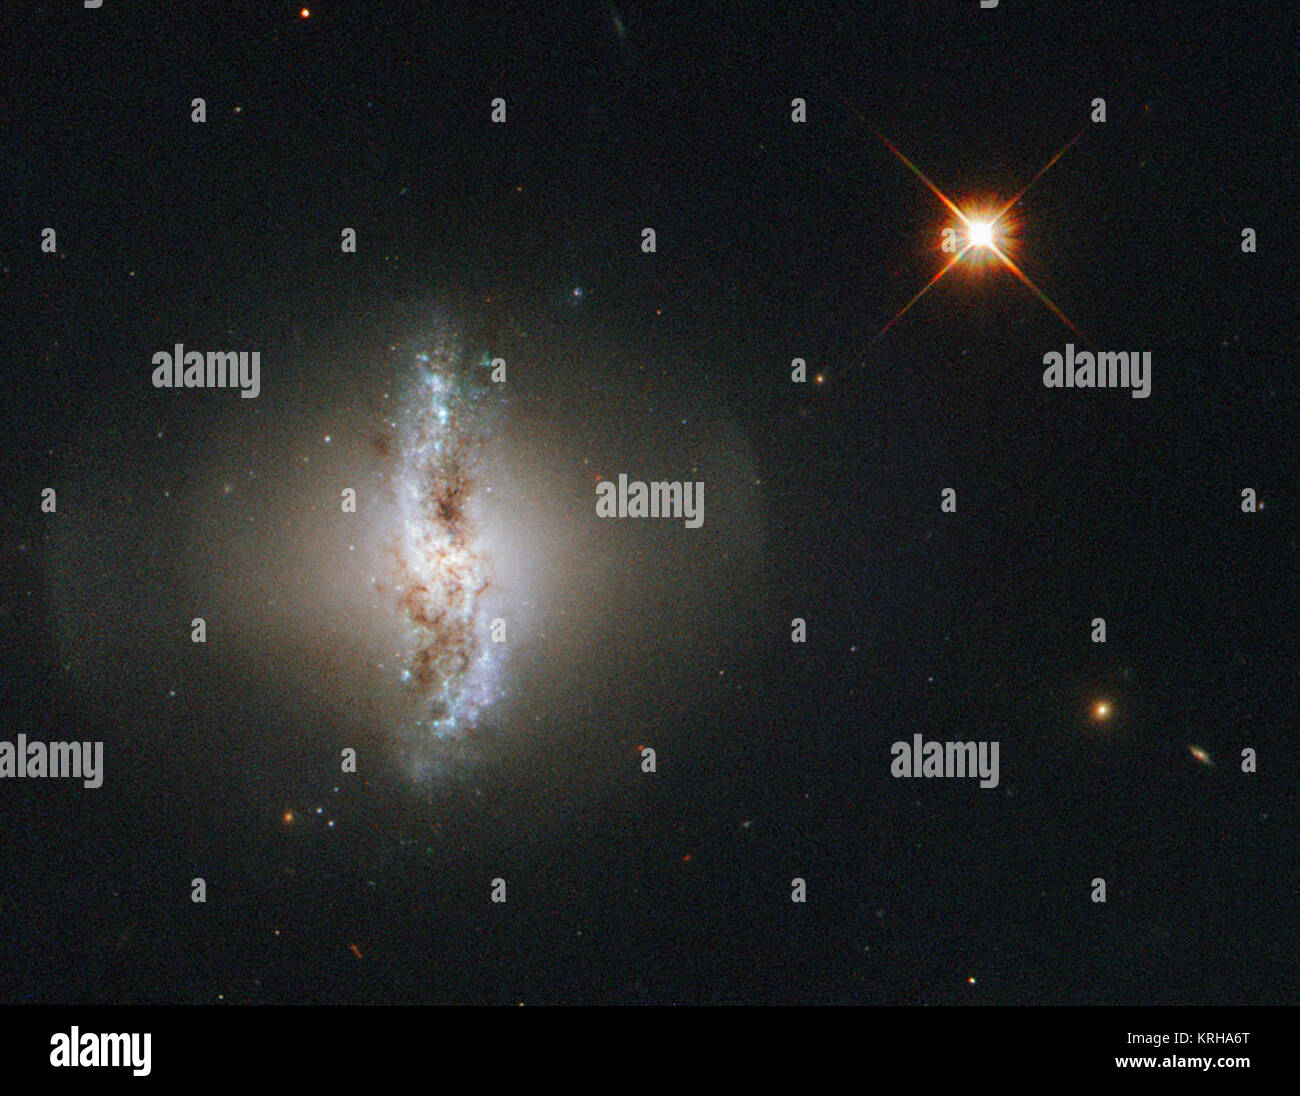 Dieses Bild der Woche zeigt Arp 230, auch als IC51, die von der NASA/ESA Hubble Space Teleskop beobachtet bekannt. Arp 230 ist eine Galaxie von einer gelegentlich oder besondere Form und ist somit Teil des Atlas der eigenartigen Galaxien von Halton Arp produziert. Die unregelmäßige Form ist das Ergebnis eines heftigen Kollision mit einer anderen Galaxie, die irgendwann in der Vergangenheit. Die Kollision könnte auch verantwortlich für die Bildung von polaren Ring der Galaxie statt. Den äußeren Ring um die Galaxie besteht aus Gas und Sterne und dreht sich über die Pole der Galaxie. Es wird angenommen, dass die Umlaufbahn des kleineren Stockfoto